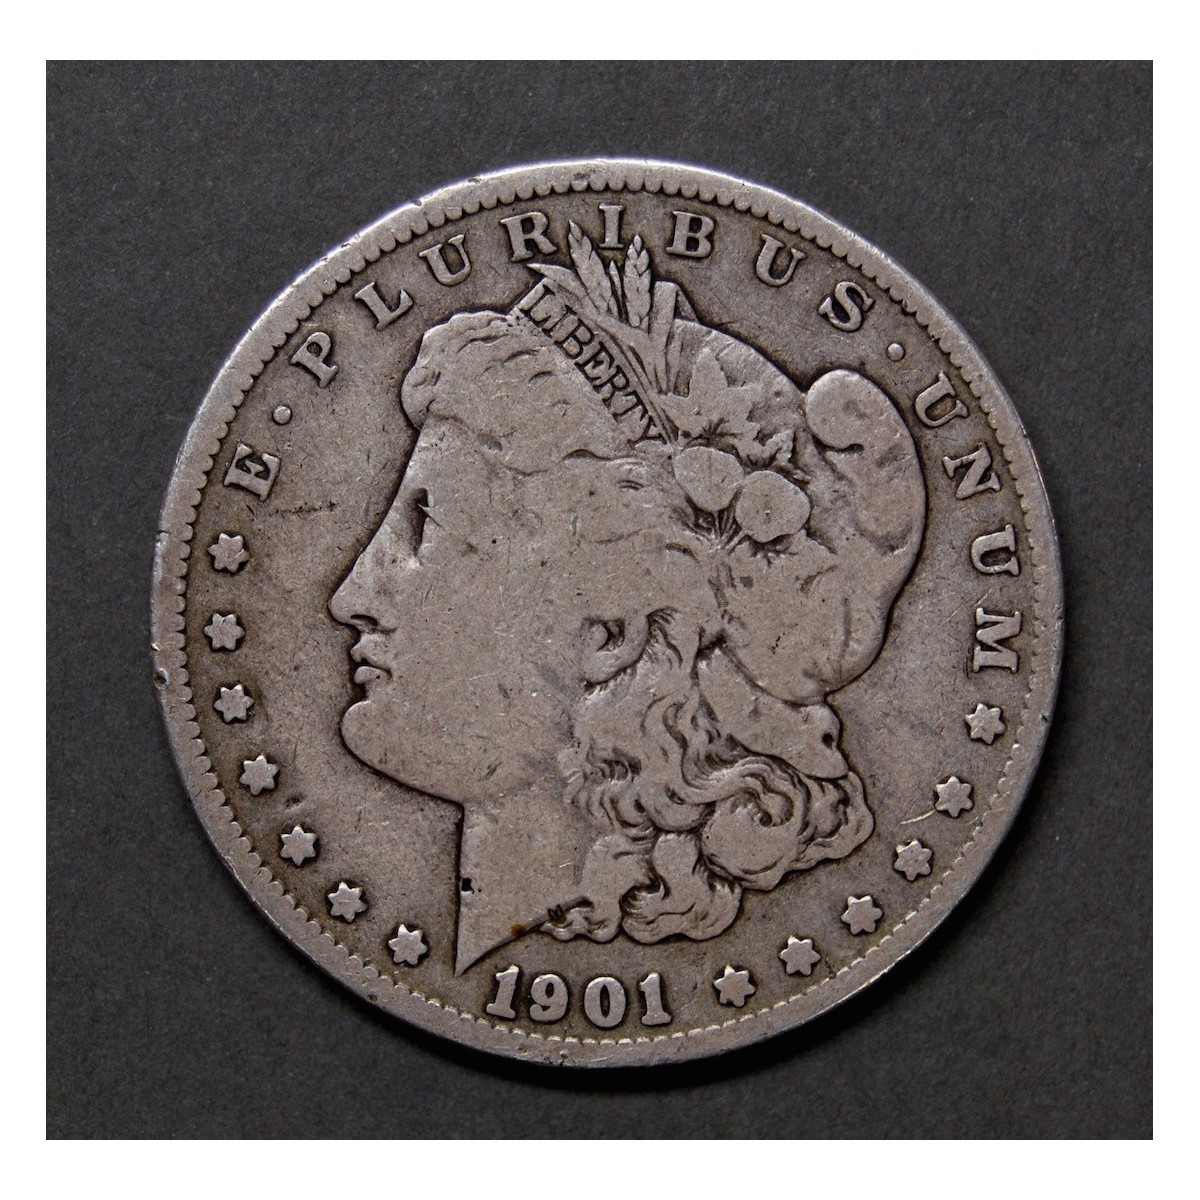 1 dollar Morgan de plata de 1901